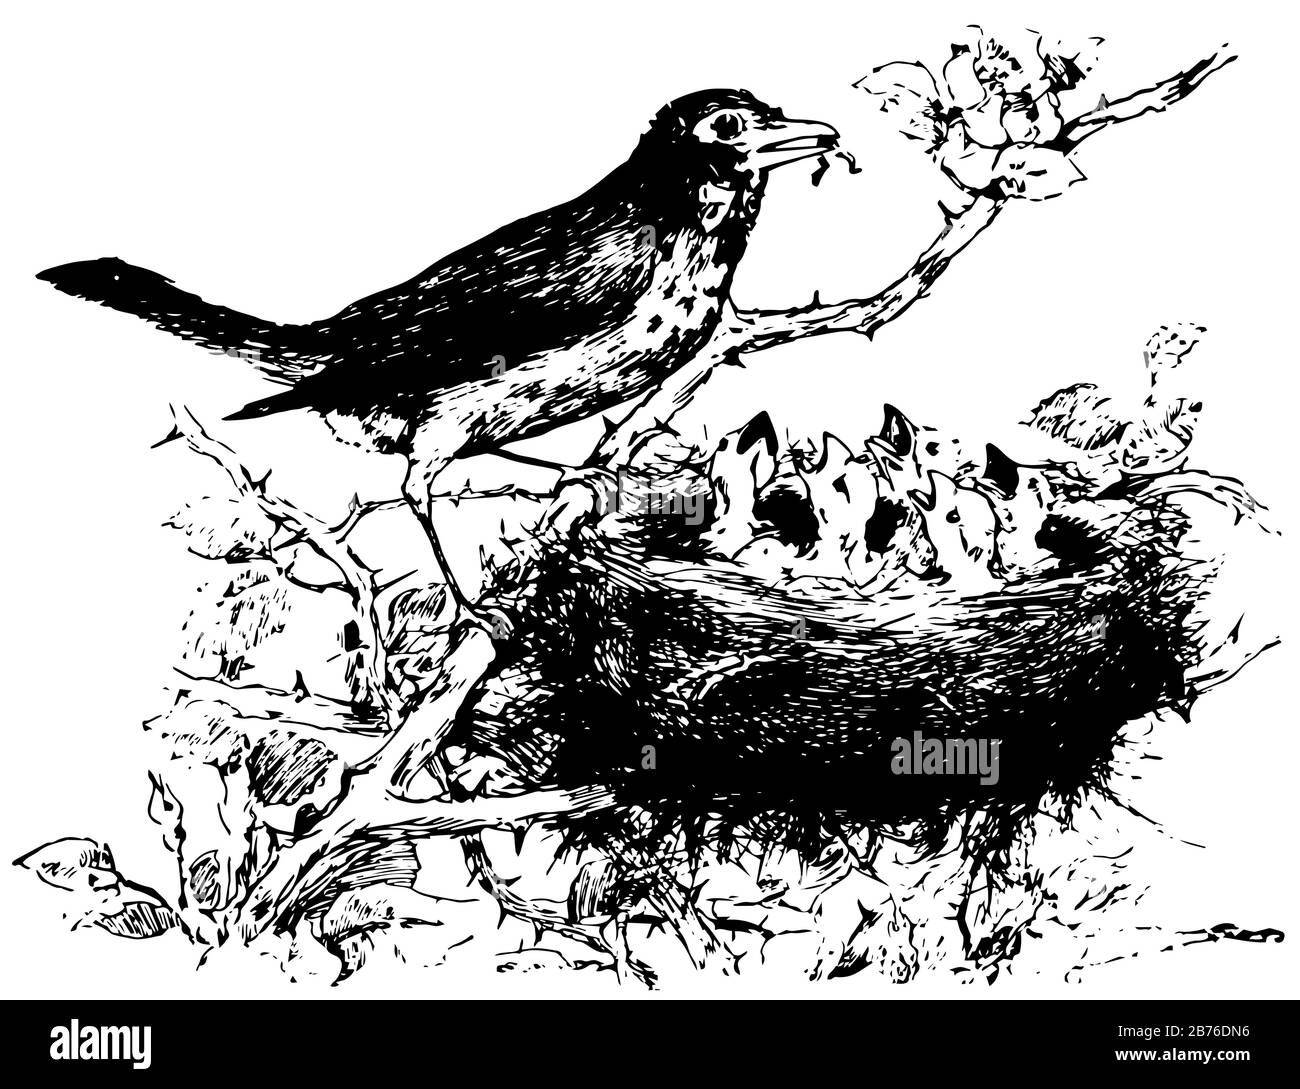 Oiseaux nourrissant ses bébés, dessin vintage de ligne ou gravure illustration. Illustration de Vecteur